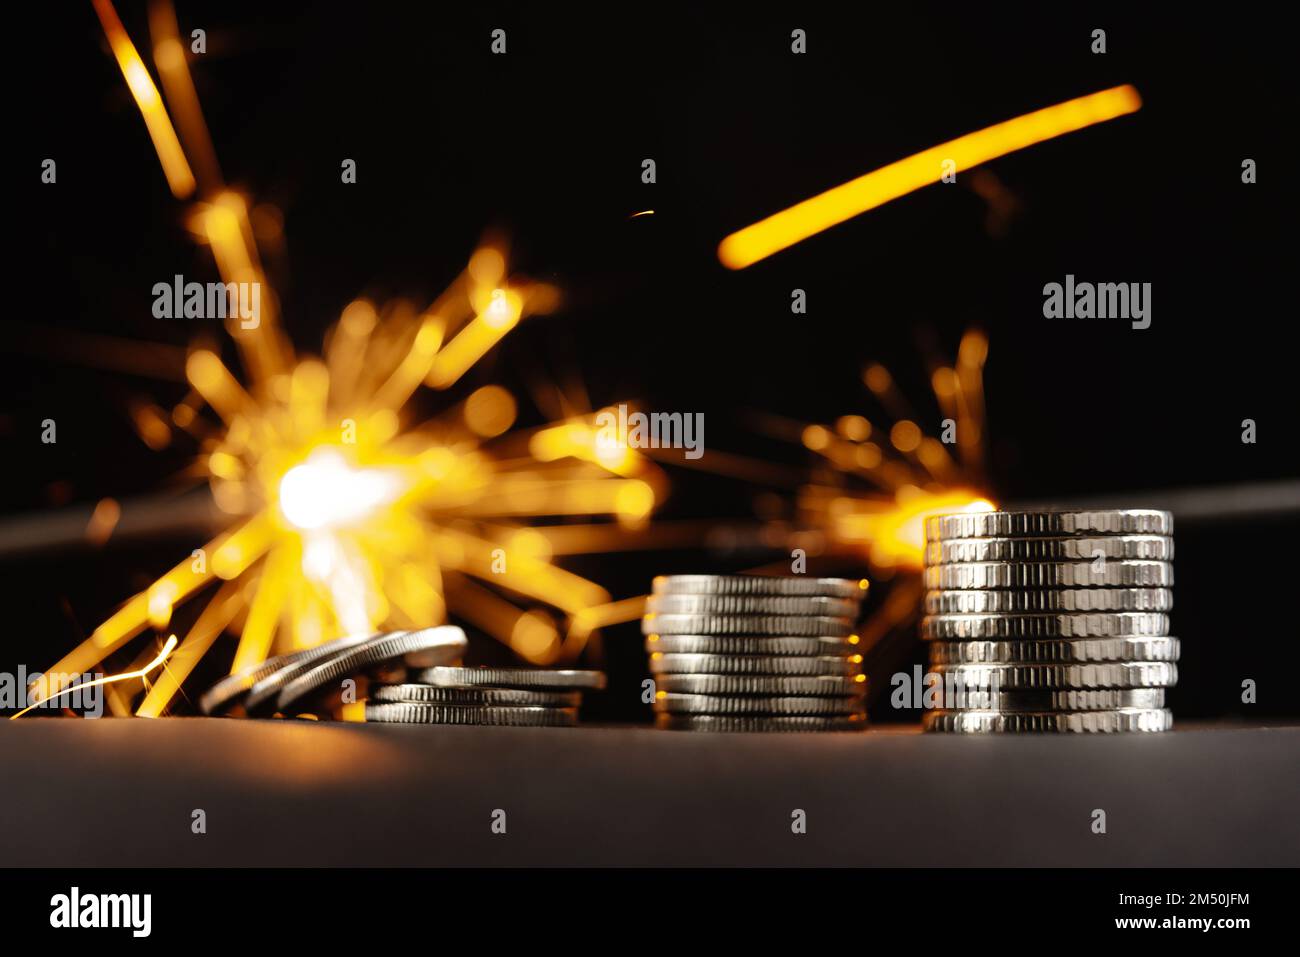 Bomba finanziaria. Le monete e lo stoppino della bomba finanziaria brucia sullo sfondo Foto Stock